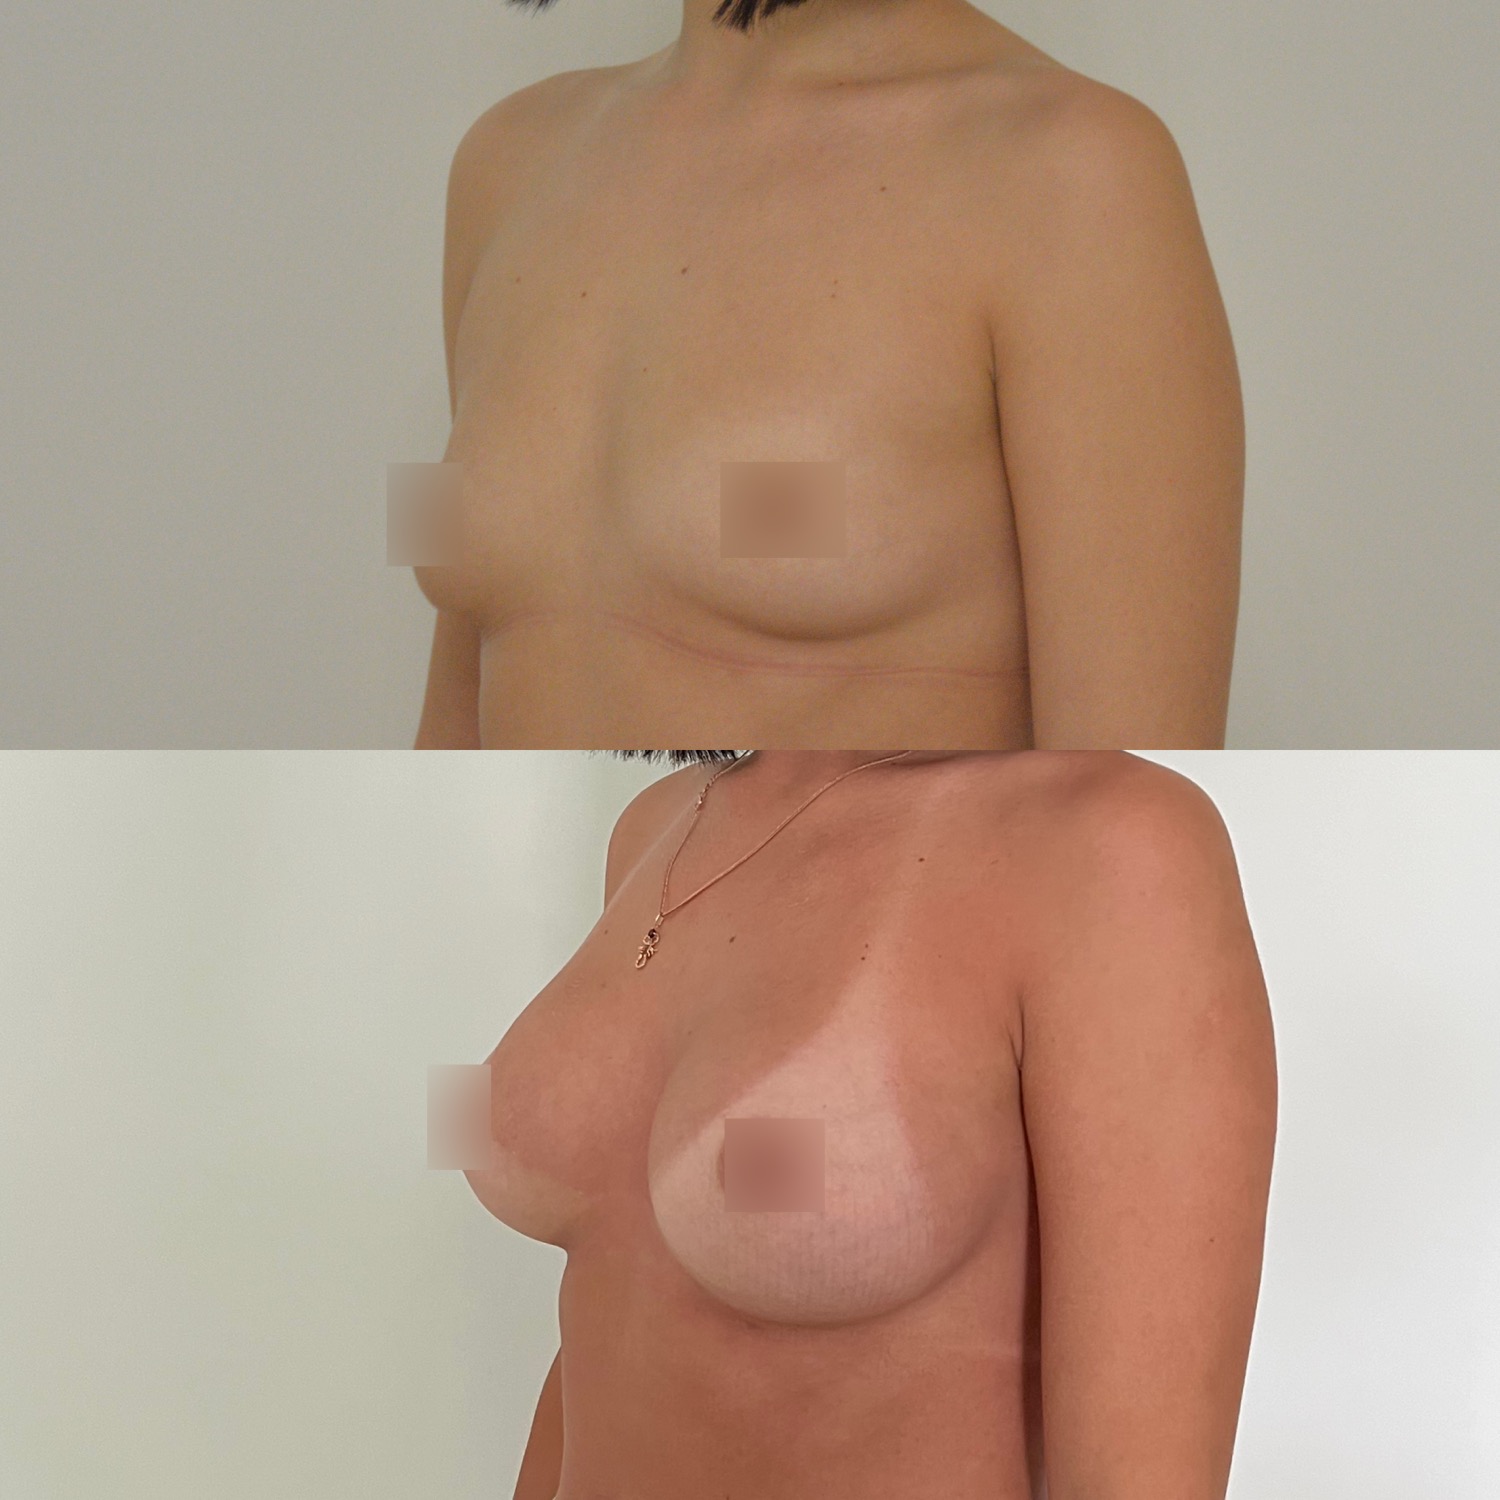 цена на силиконовую импланты грудь фото 95